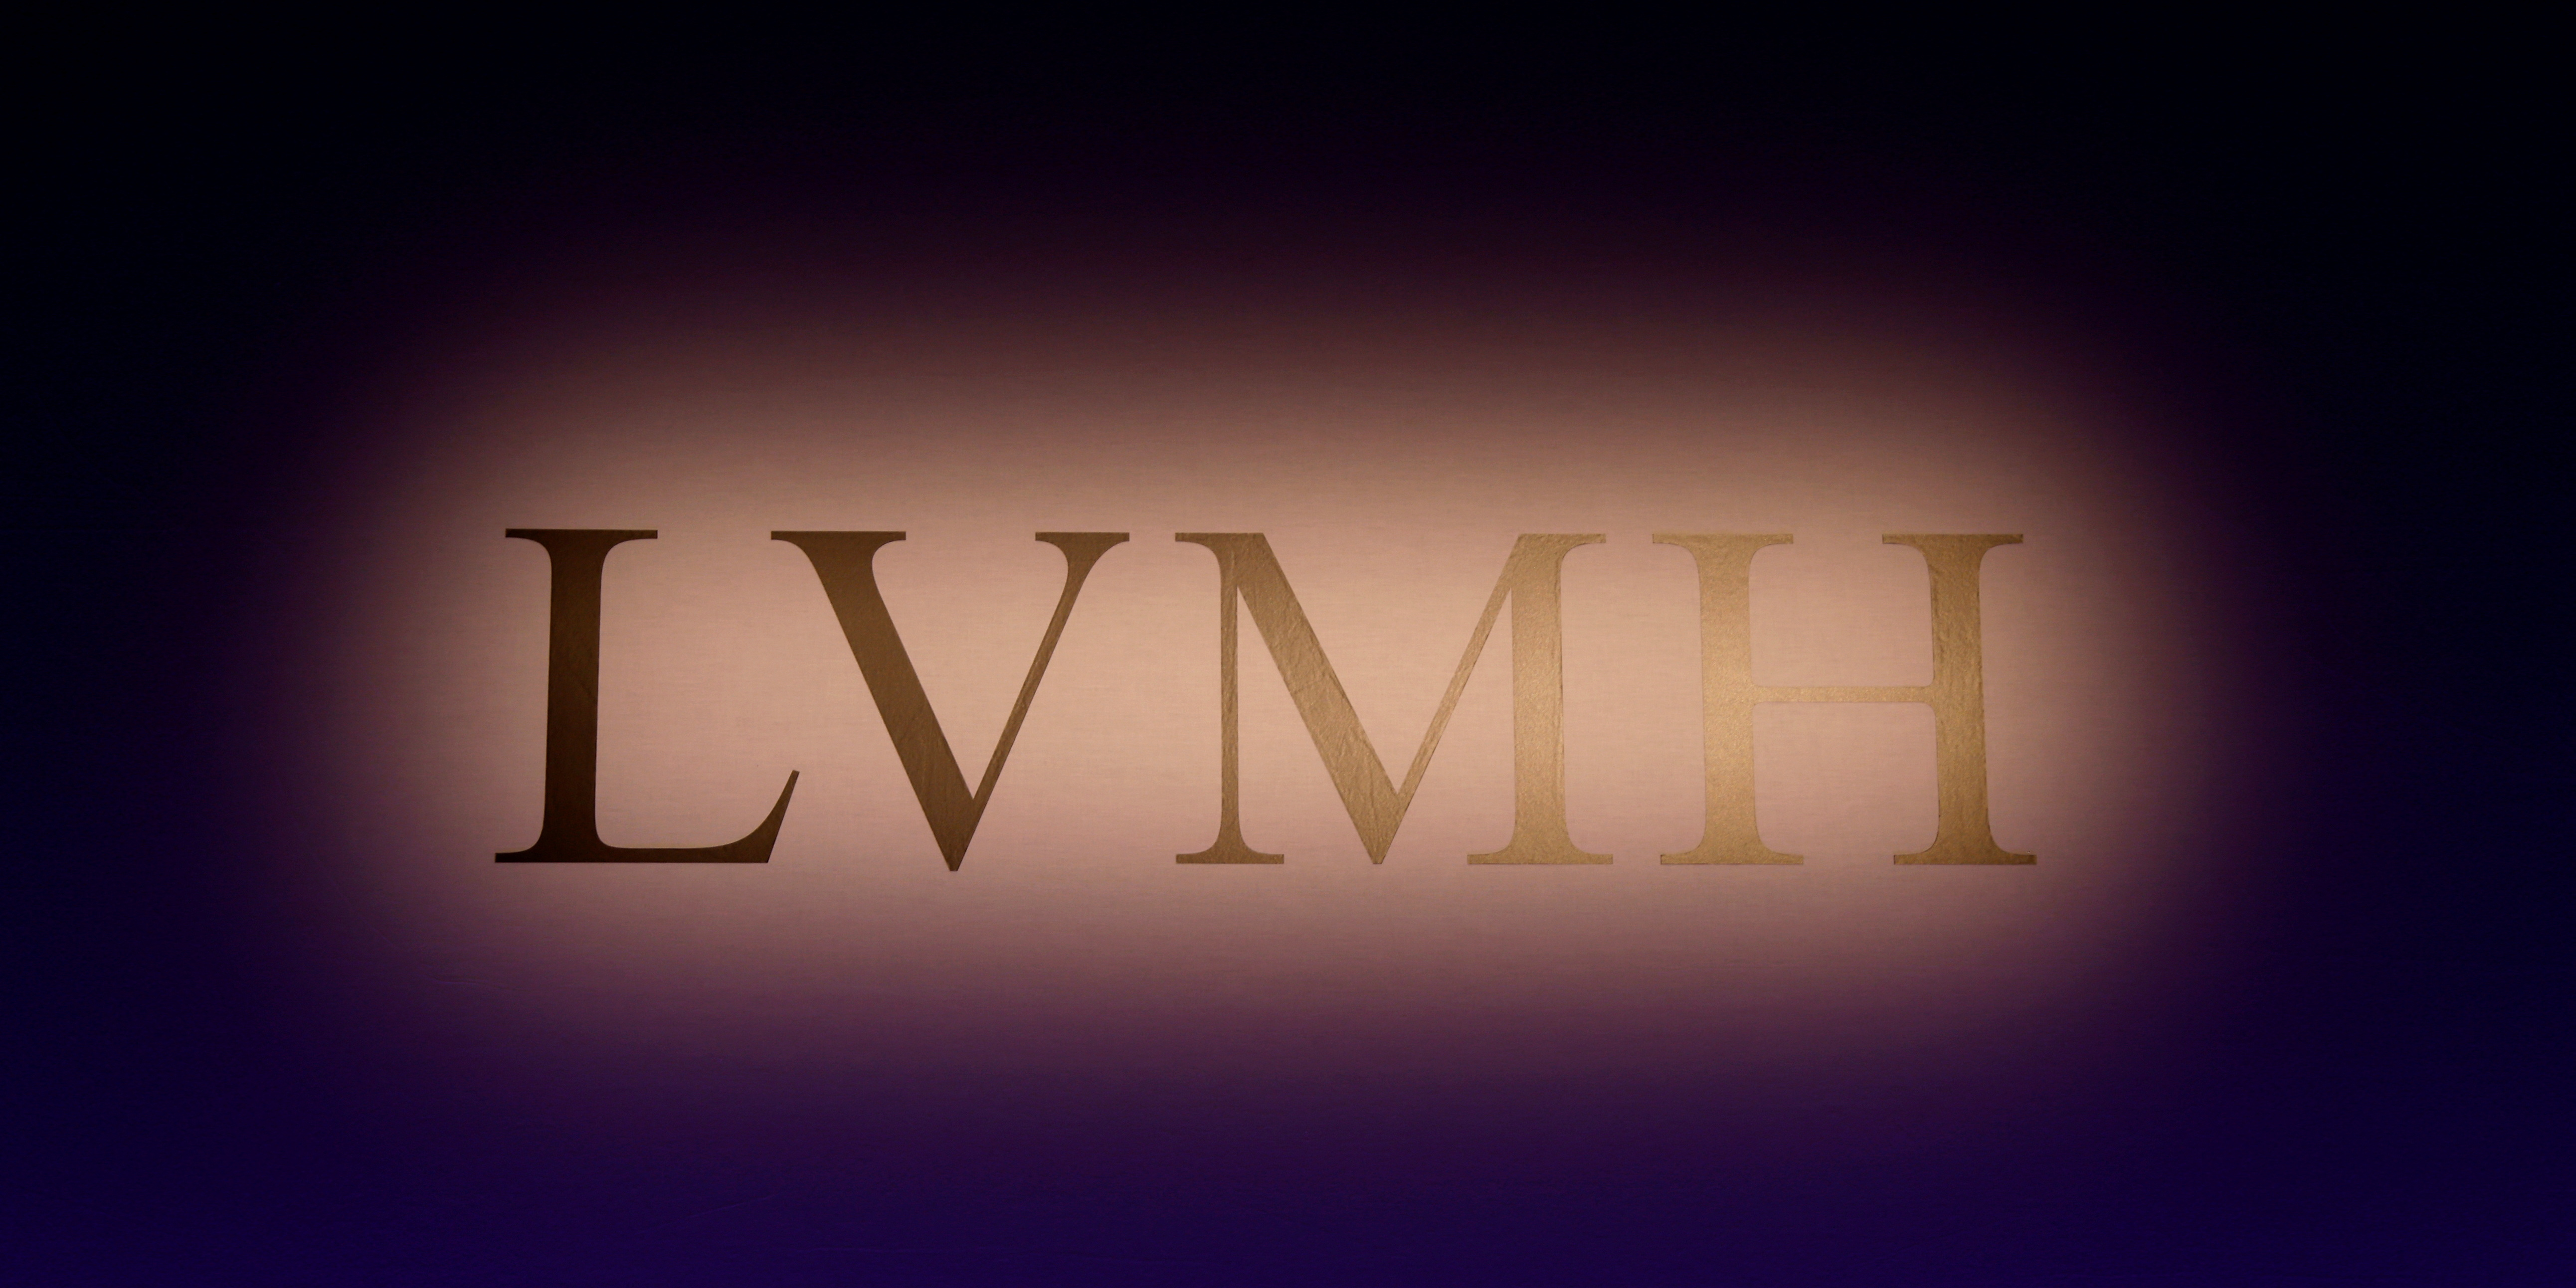 Groupe LVMH - Les chiffres clés du groupe - La vie des entreprises